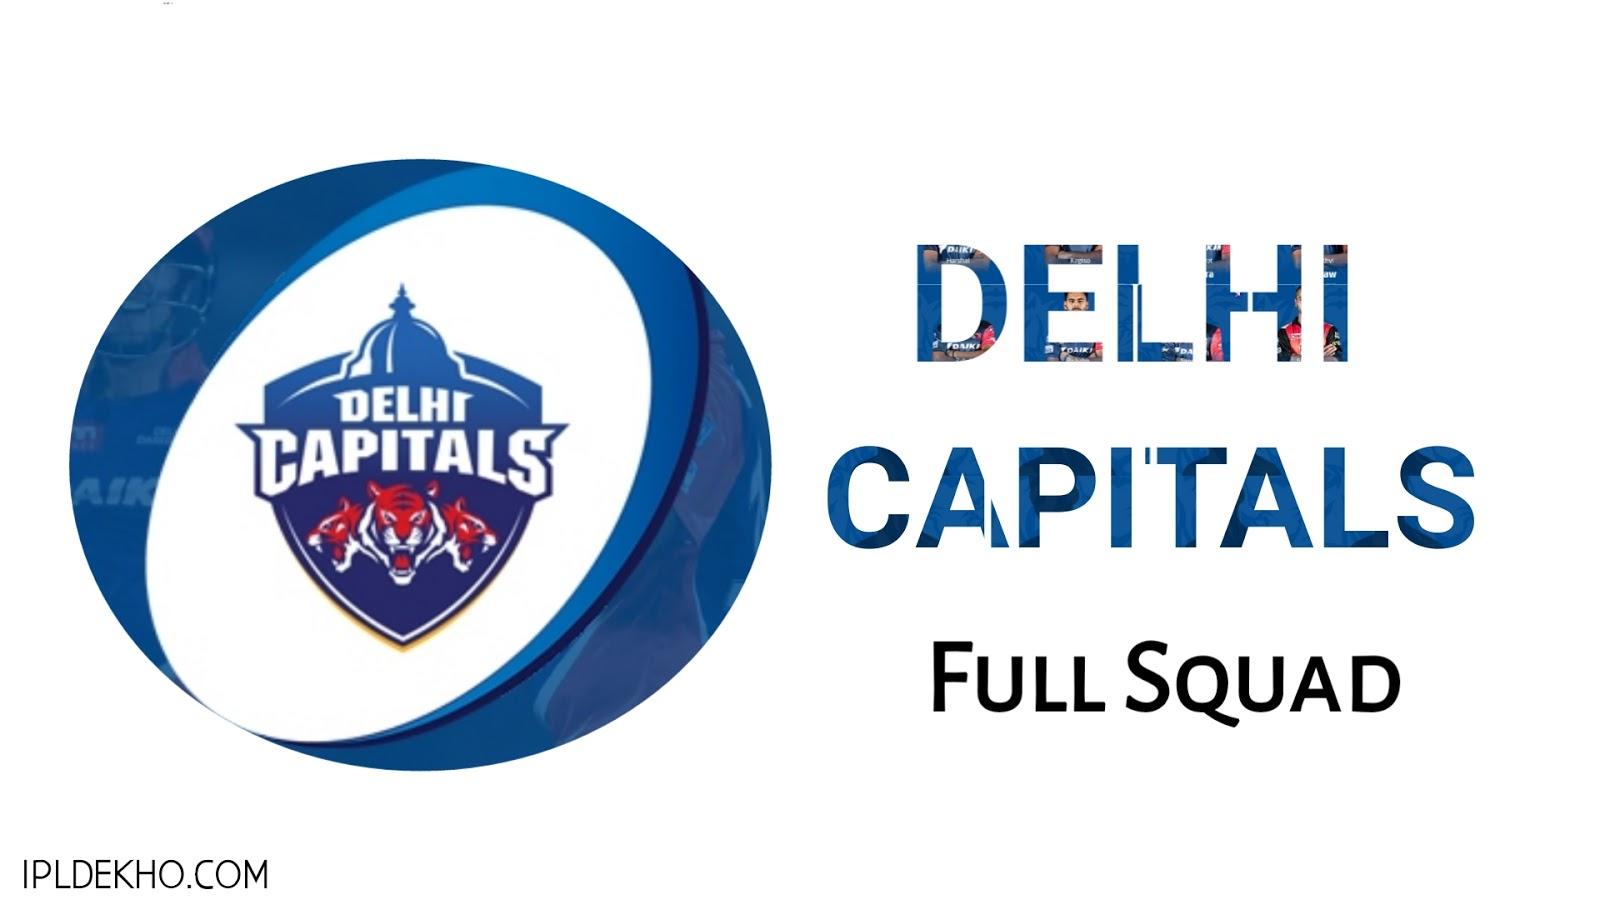 Indian premier league Full Squad Of Delhi Capitals